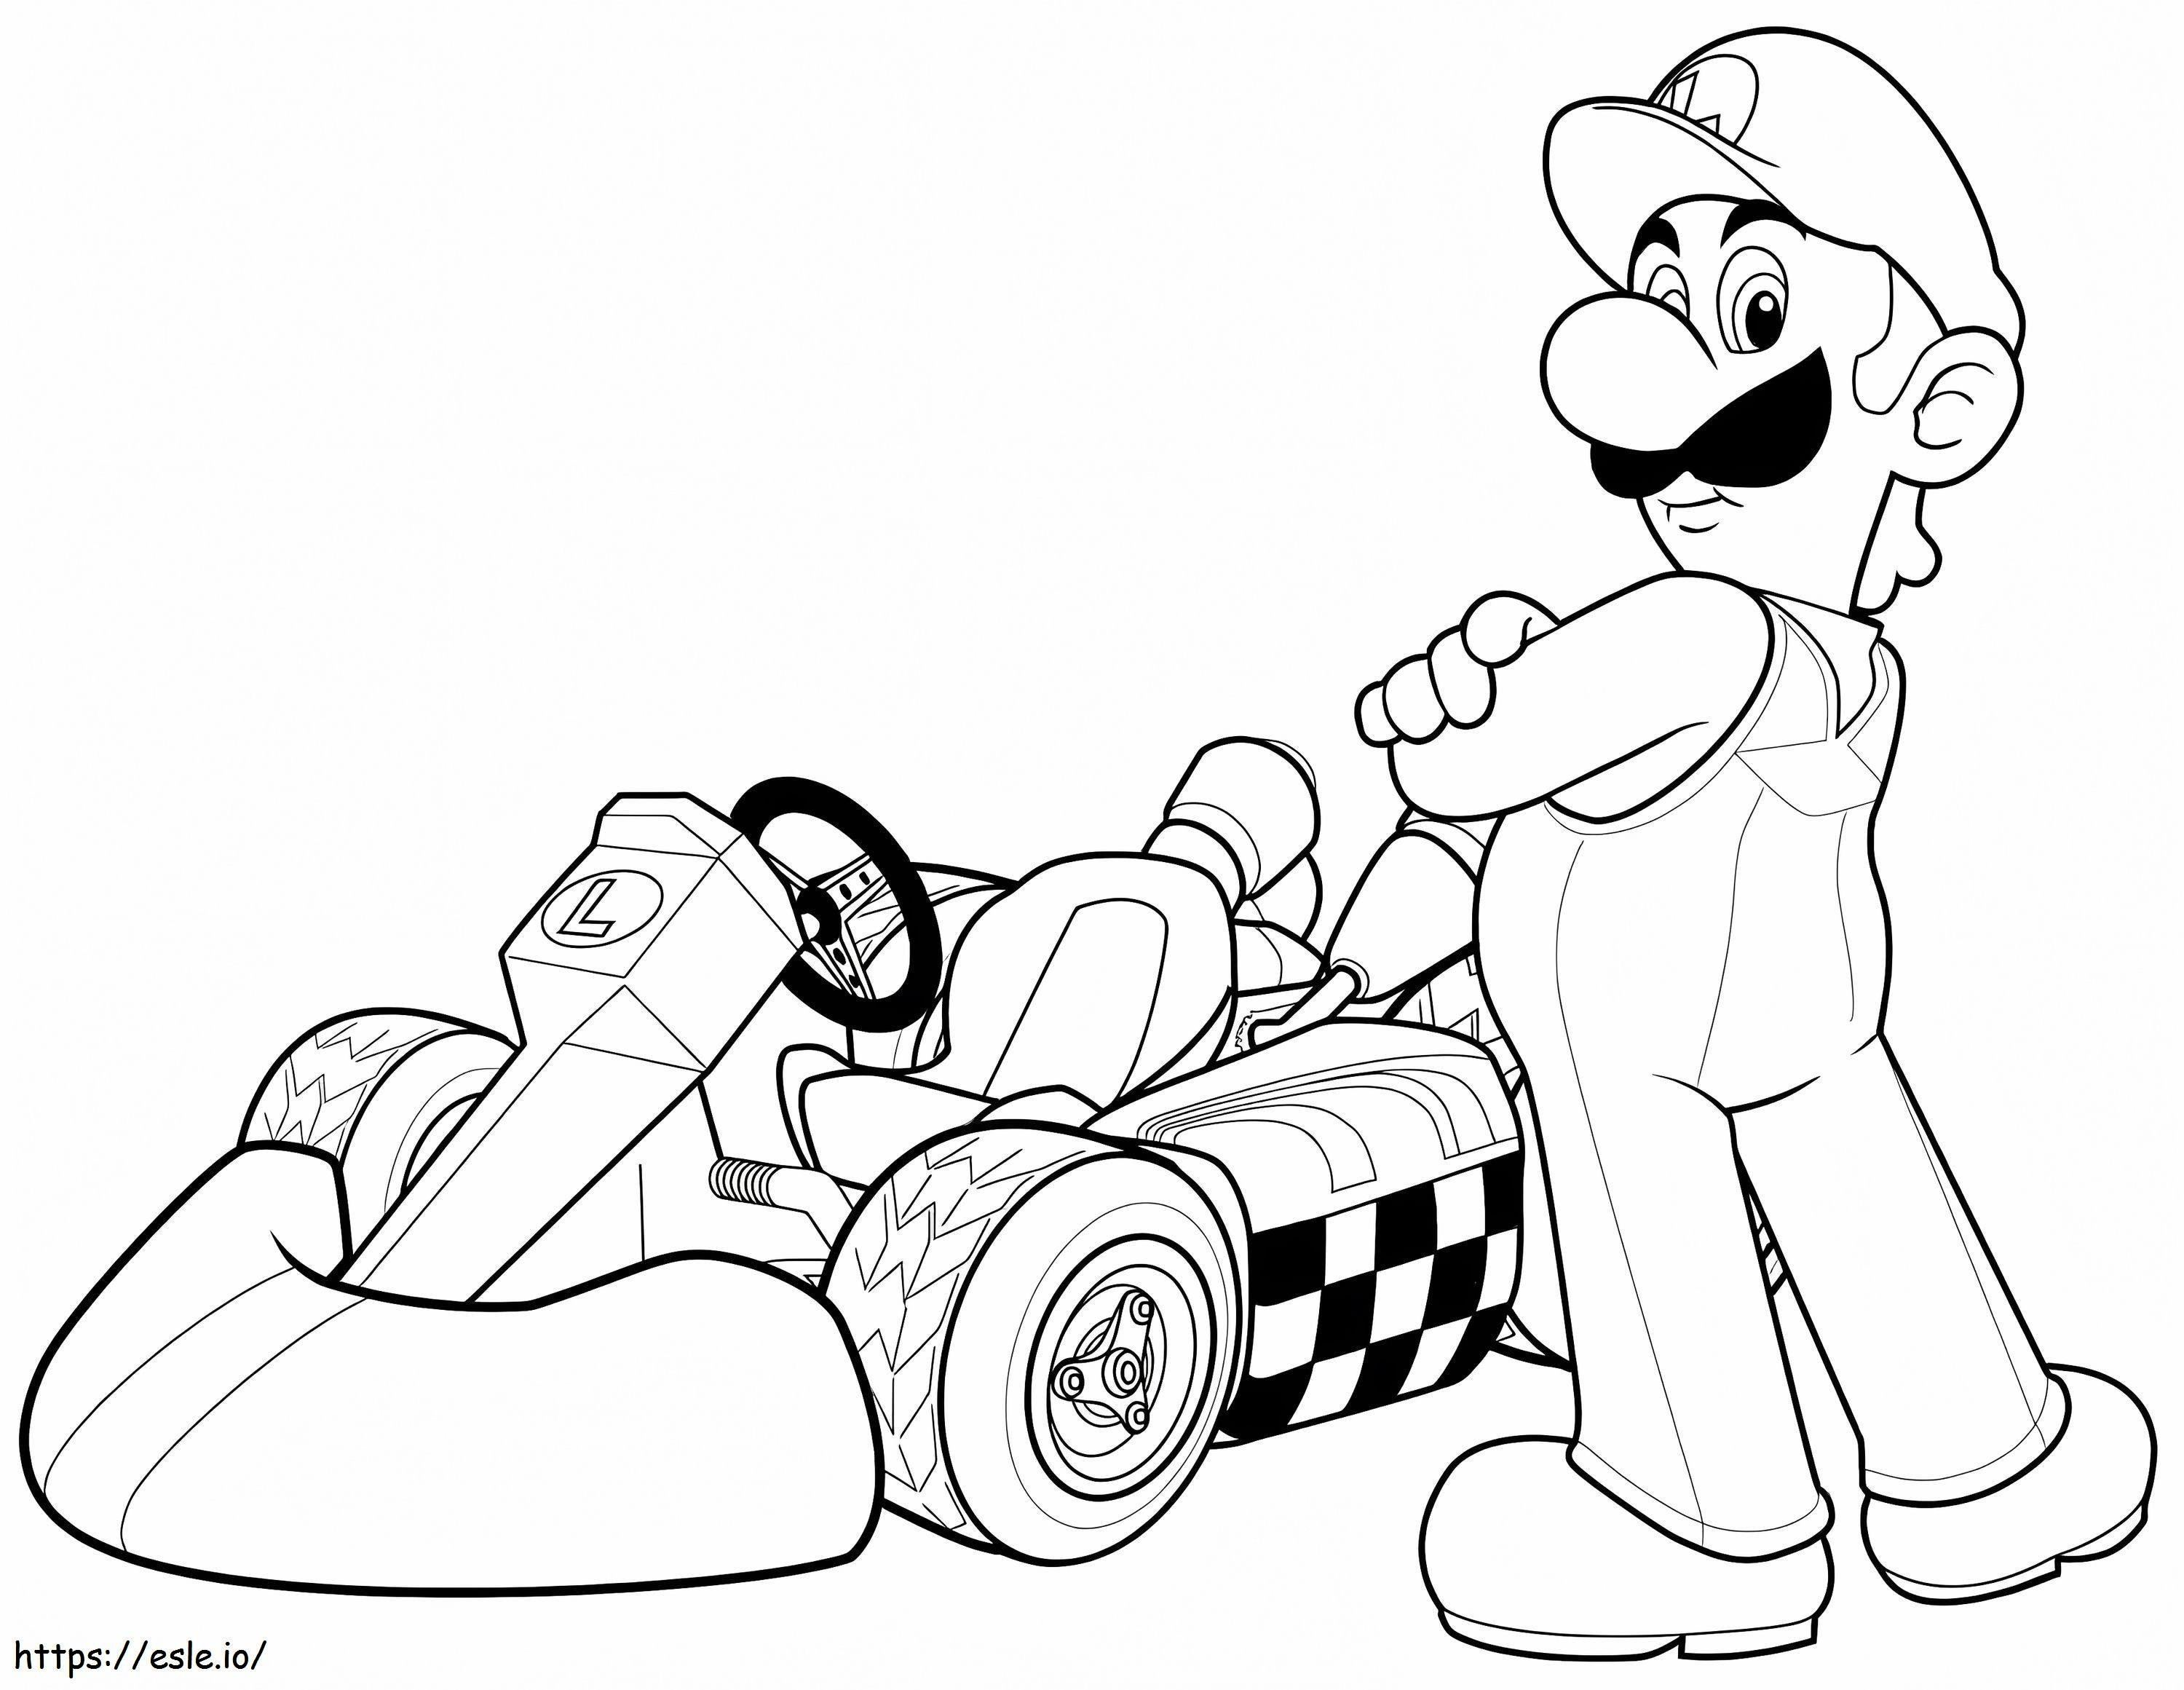 Luigi A Mario Kart Wii coloring page